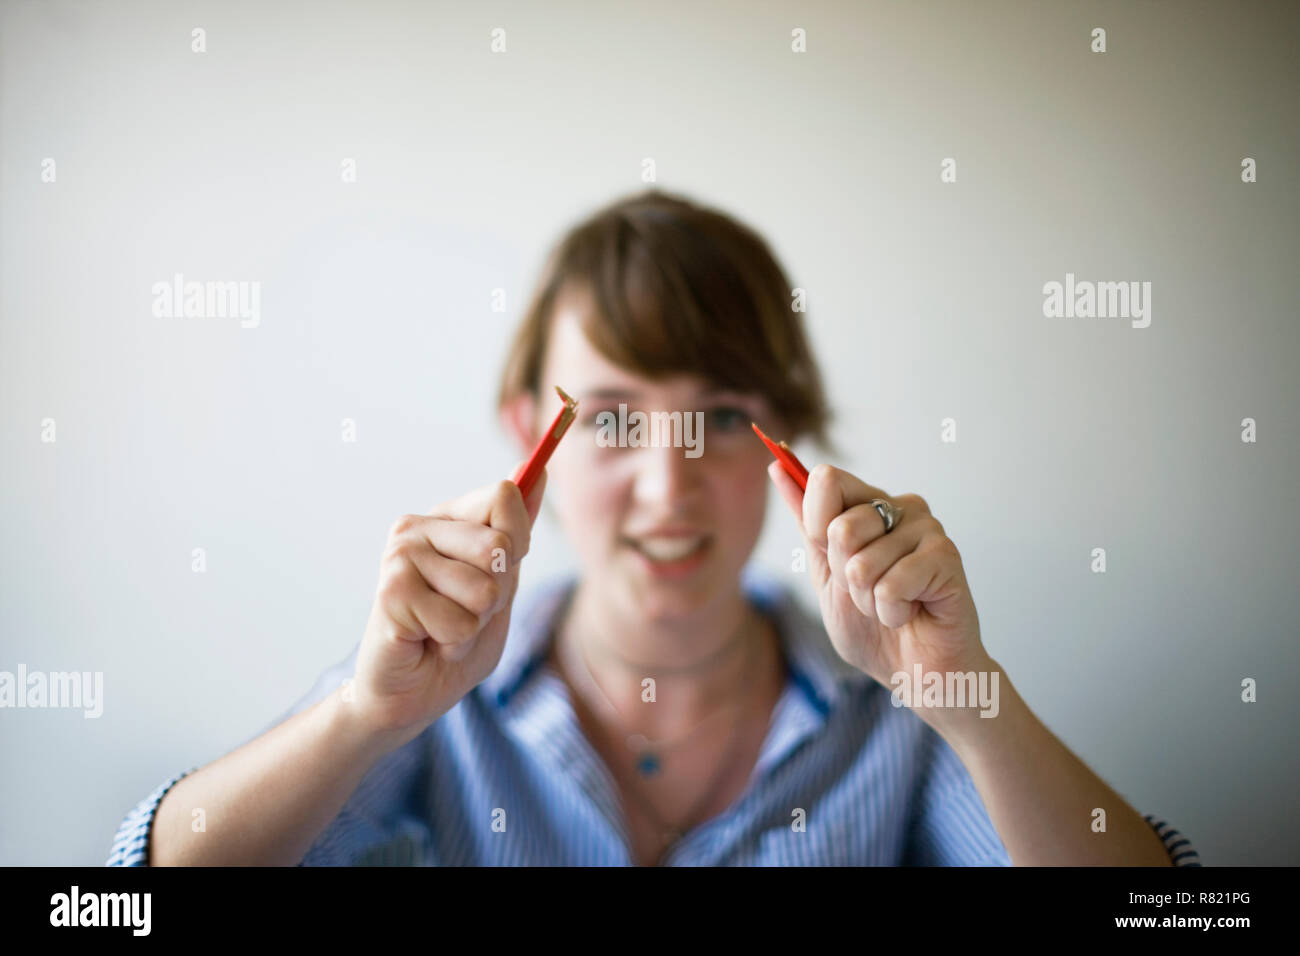 El lápiz se ajusta por una joven mujer adulta. Foto de stock